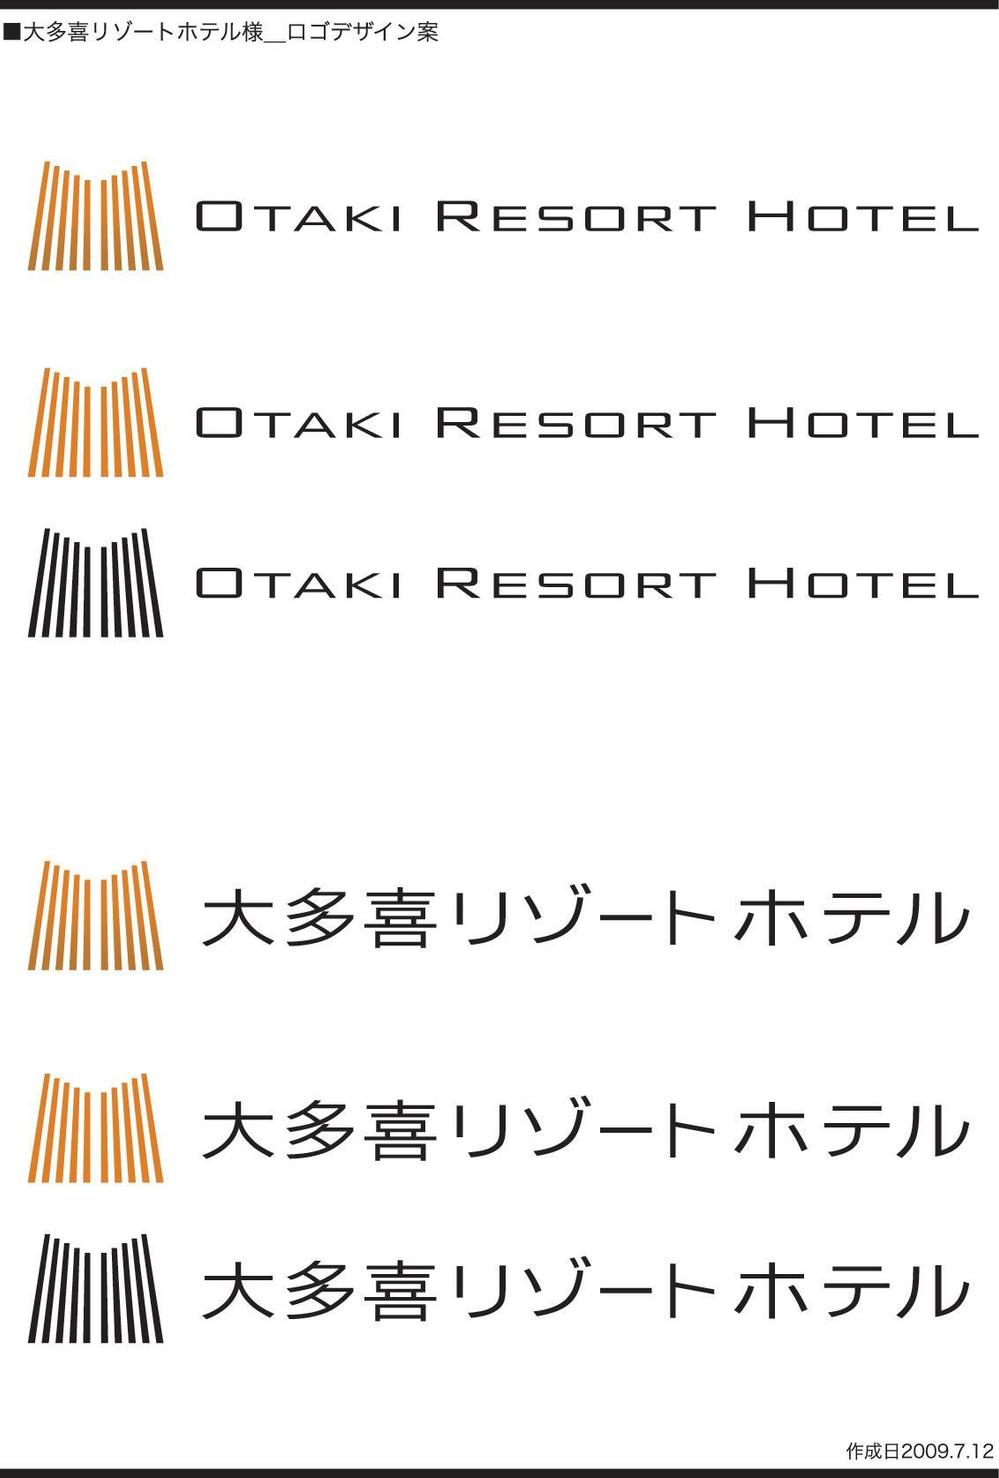 リゾートホテルのロゴ